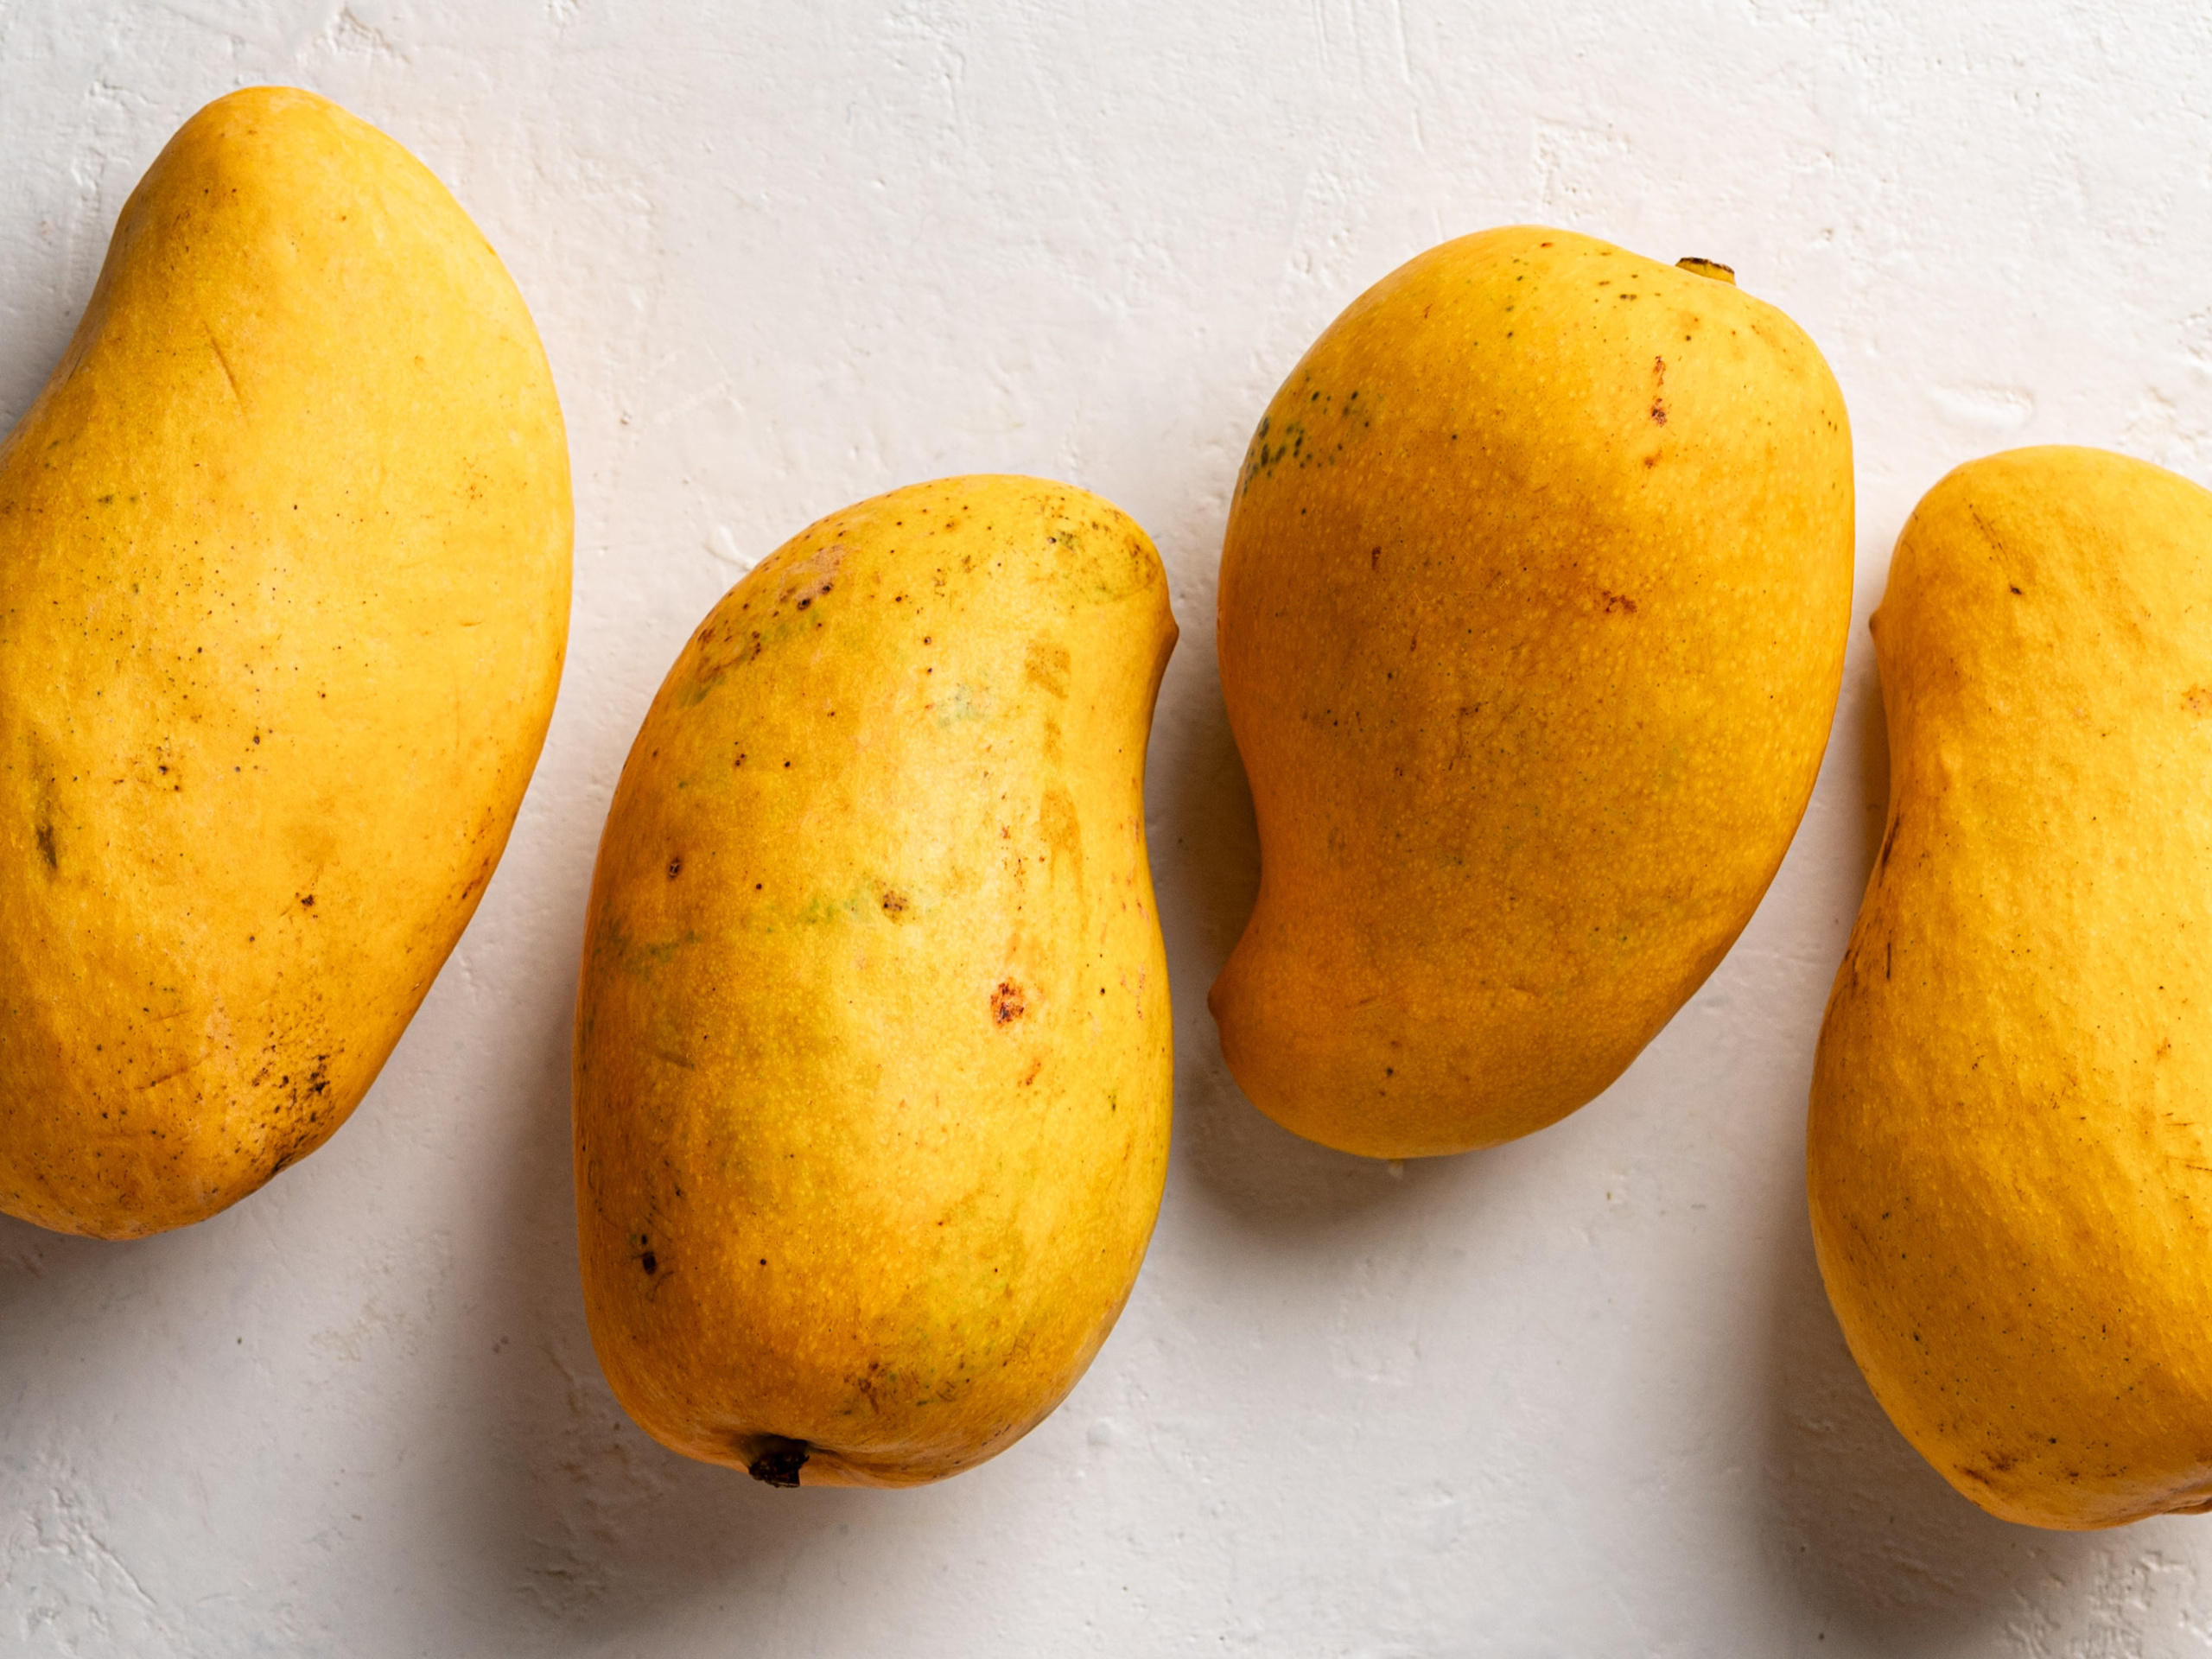 4 Ataulfo mangoes lined up